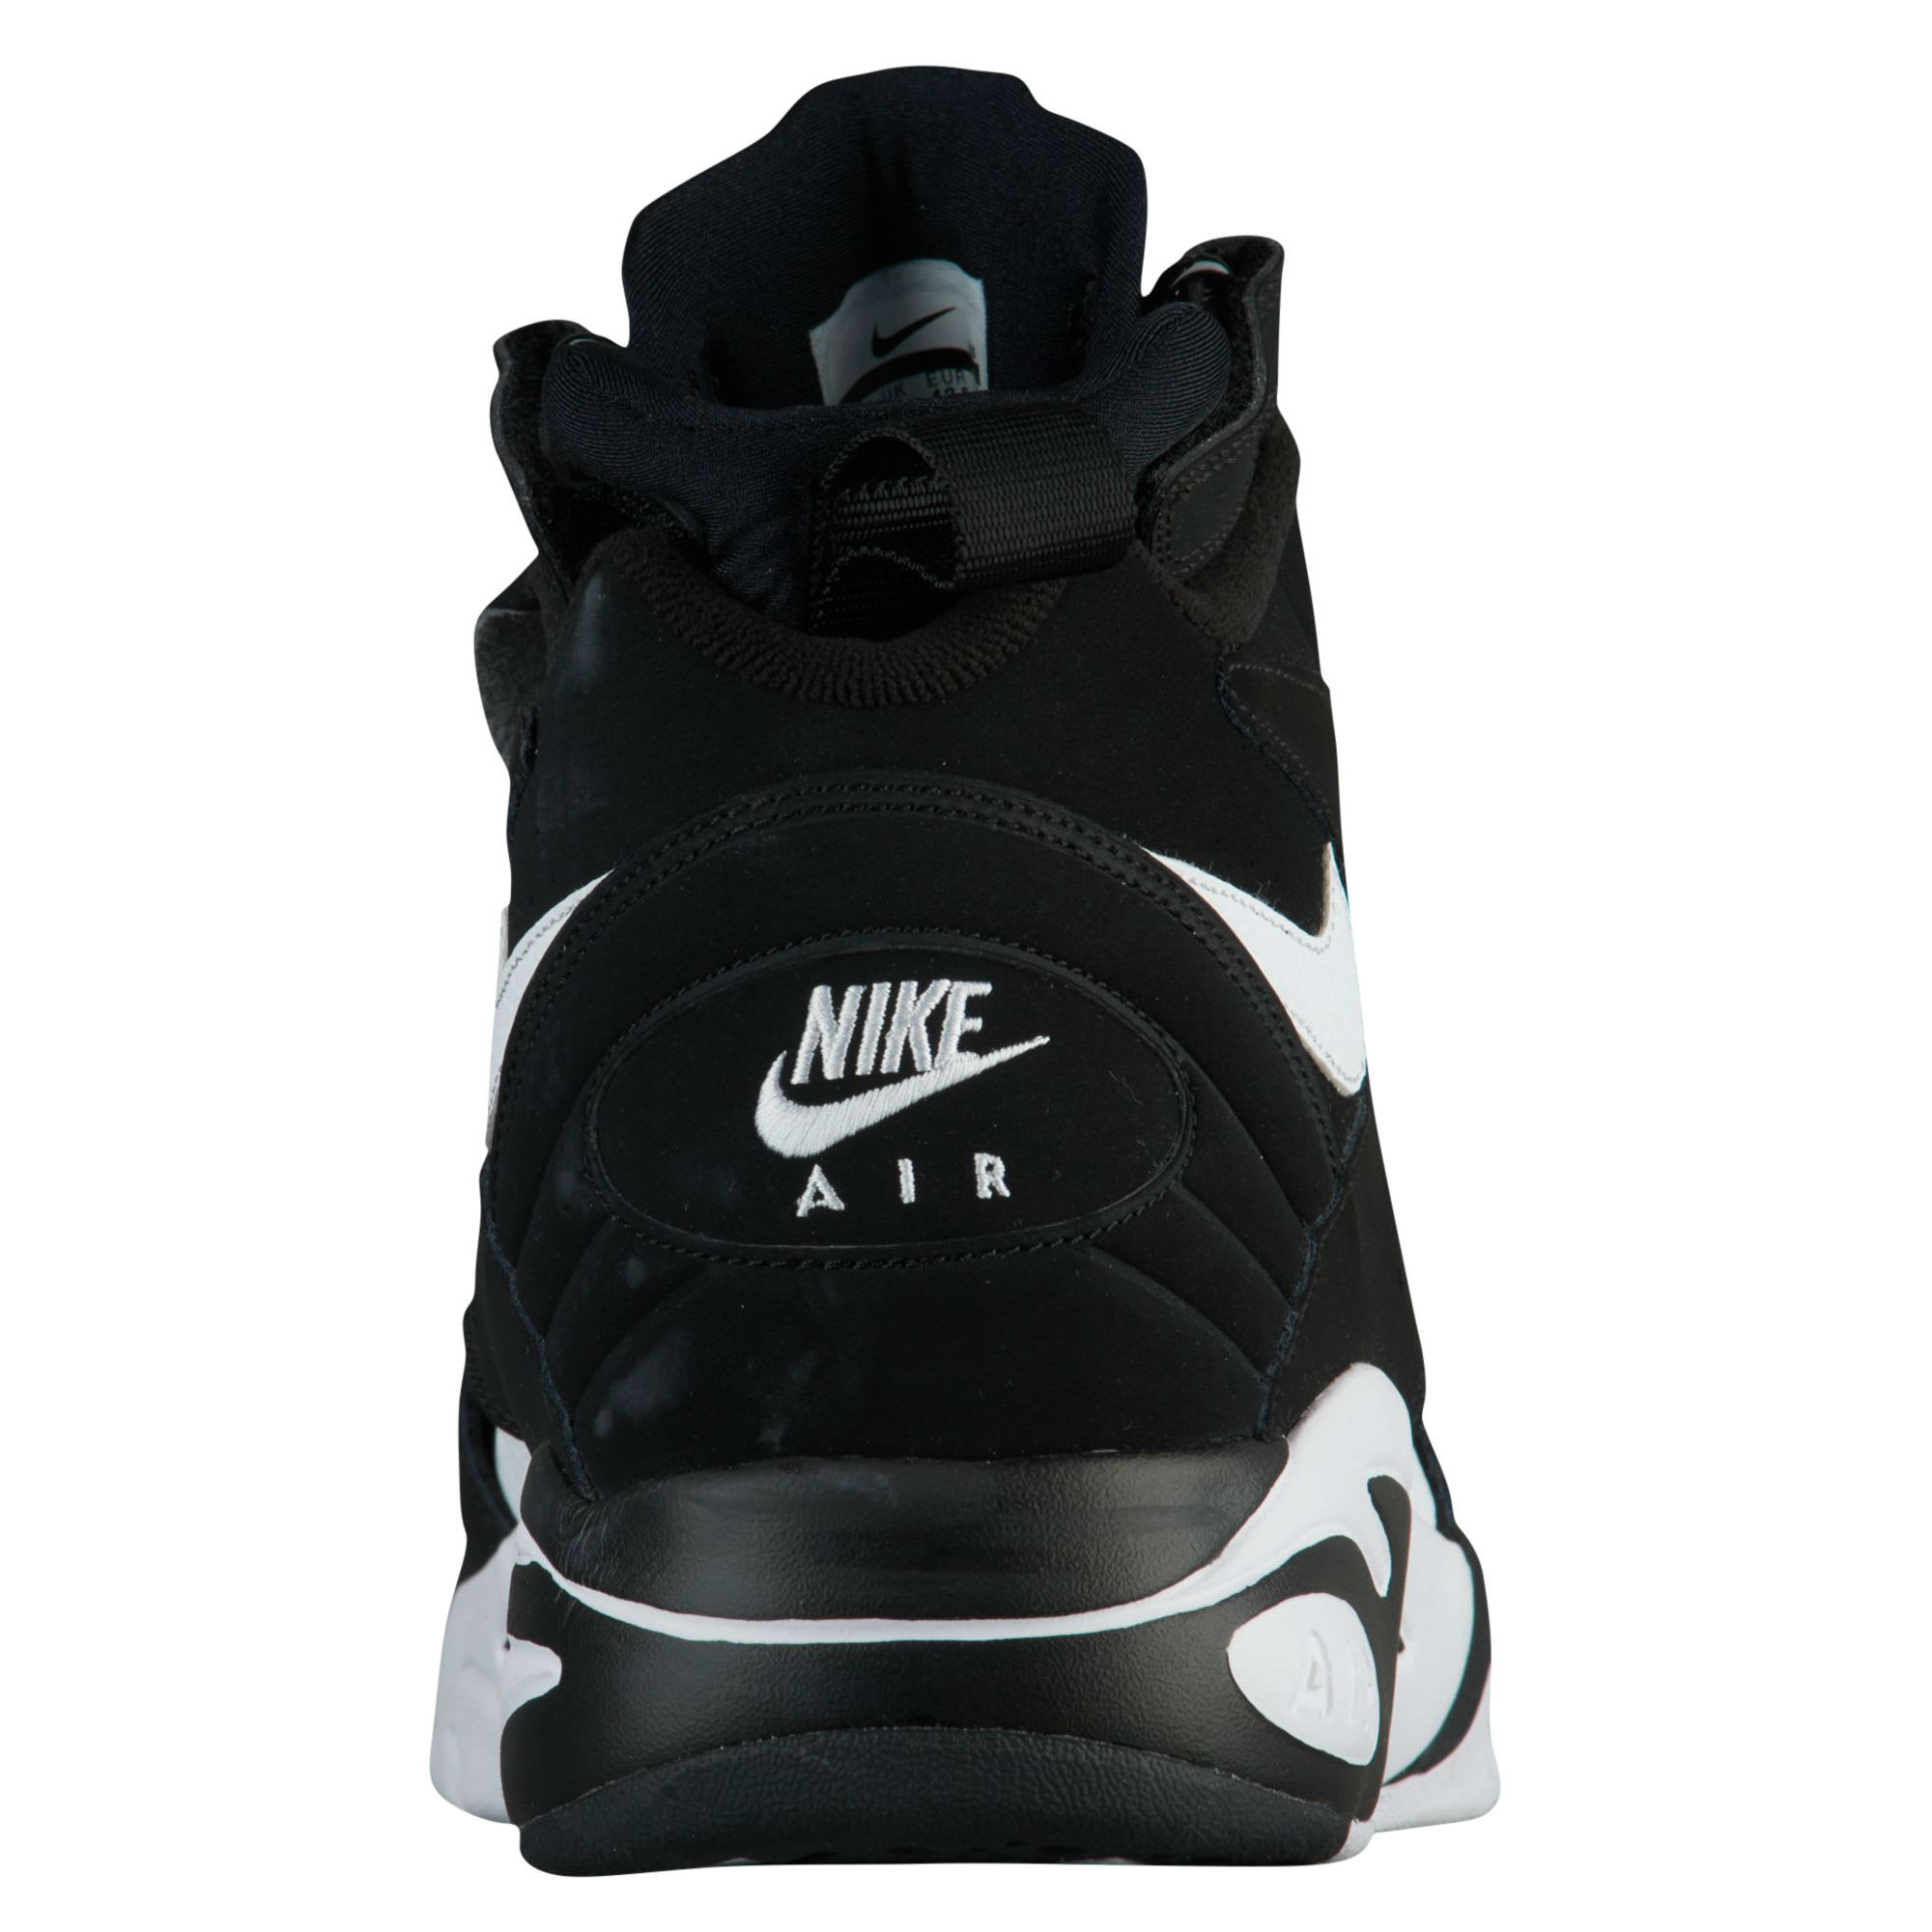 Nike Air Maestro 2 LTD Black/White Release Date AH8511-001 Heel